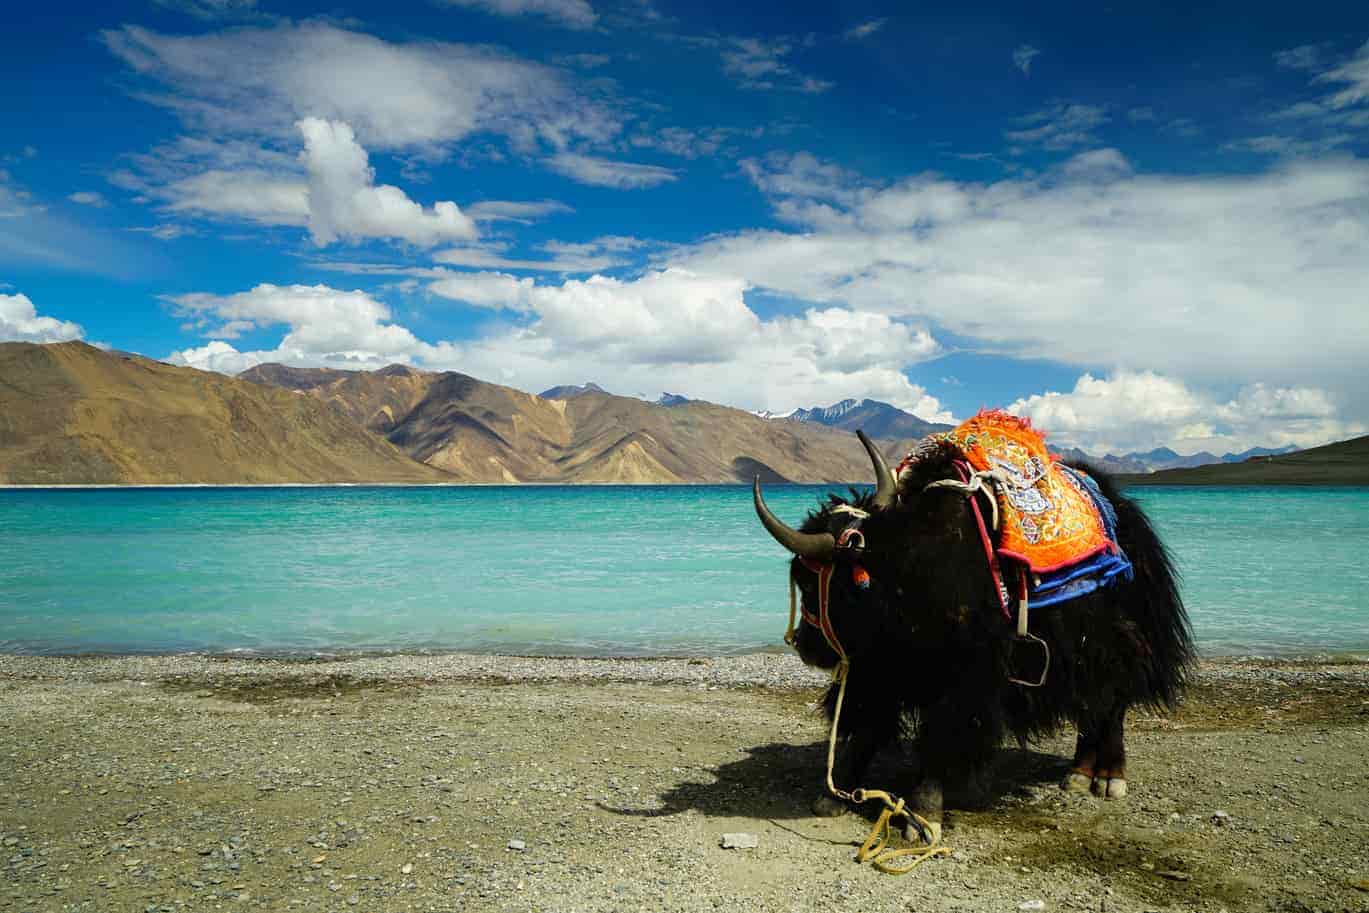 ladakh trip cost from kolkata